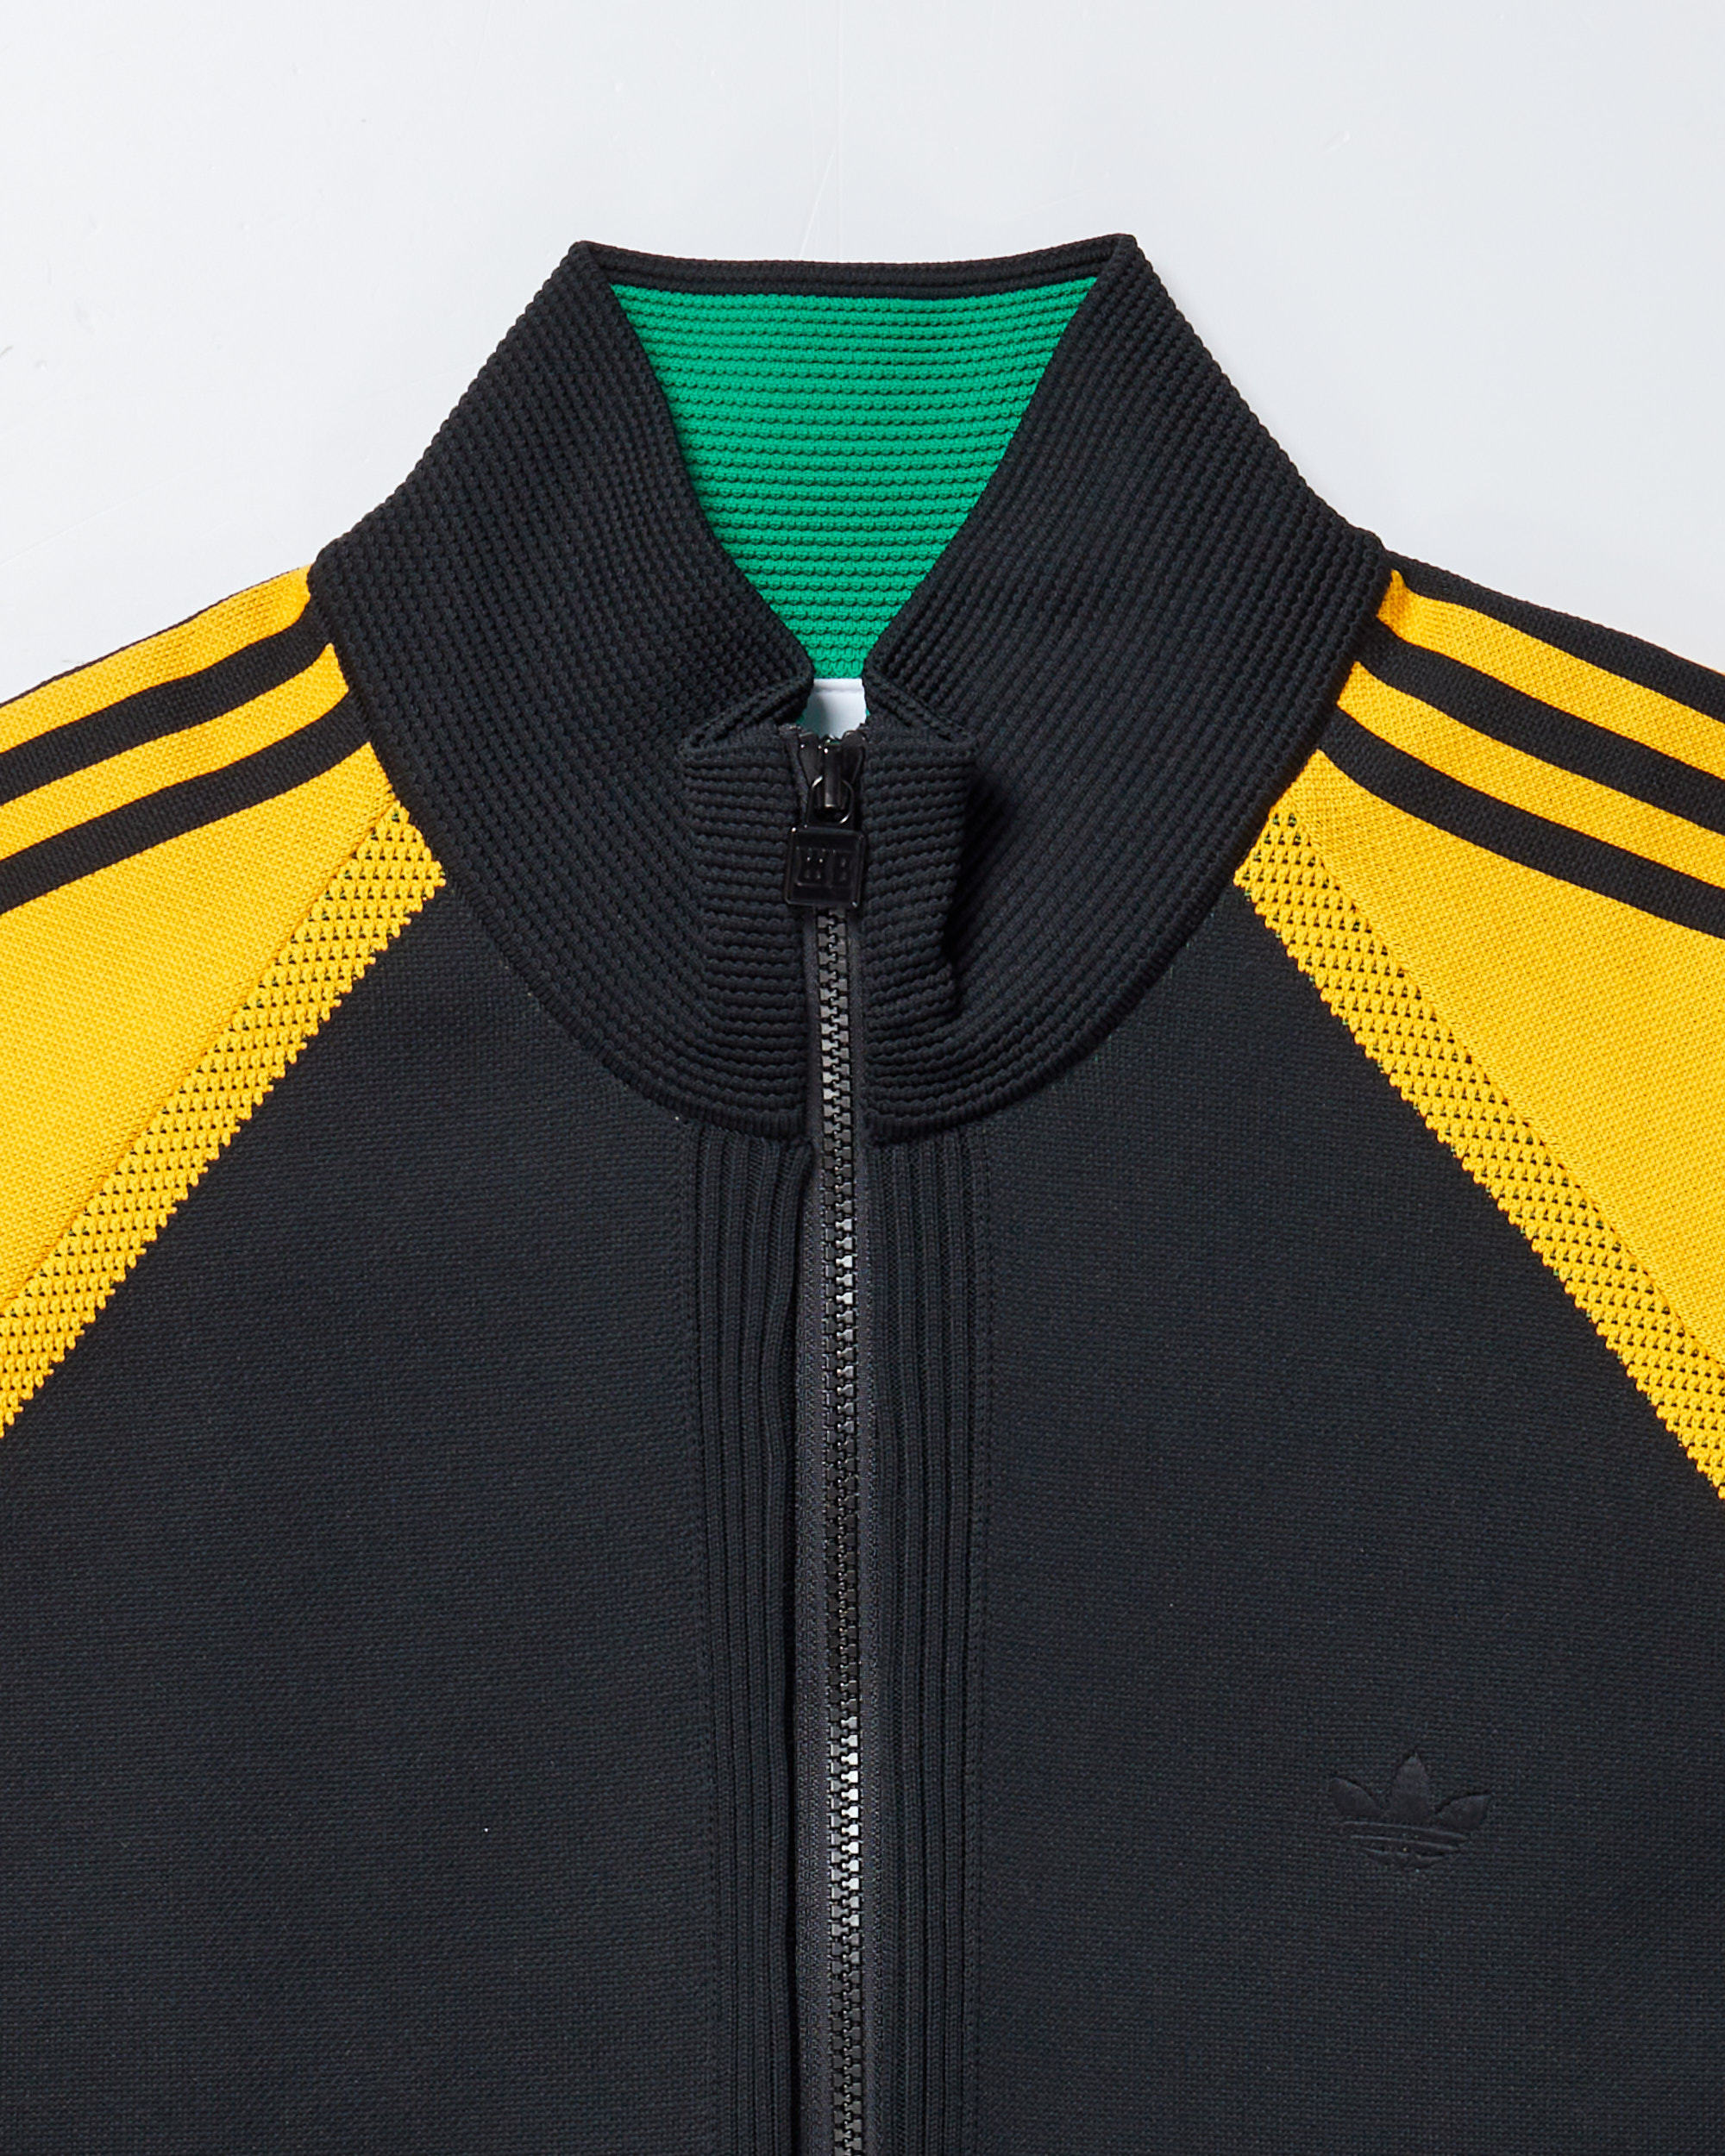 adidas Originals x Wales Bonner Men's Knit Track Jacket Black IB3261